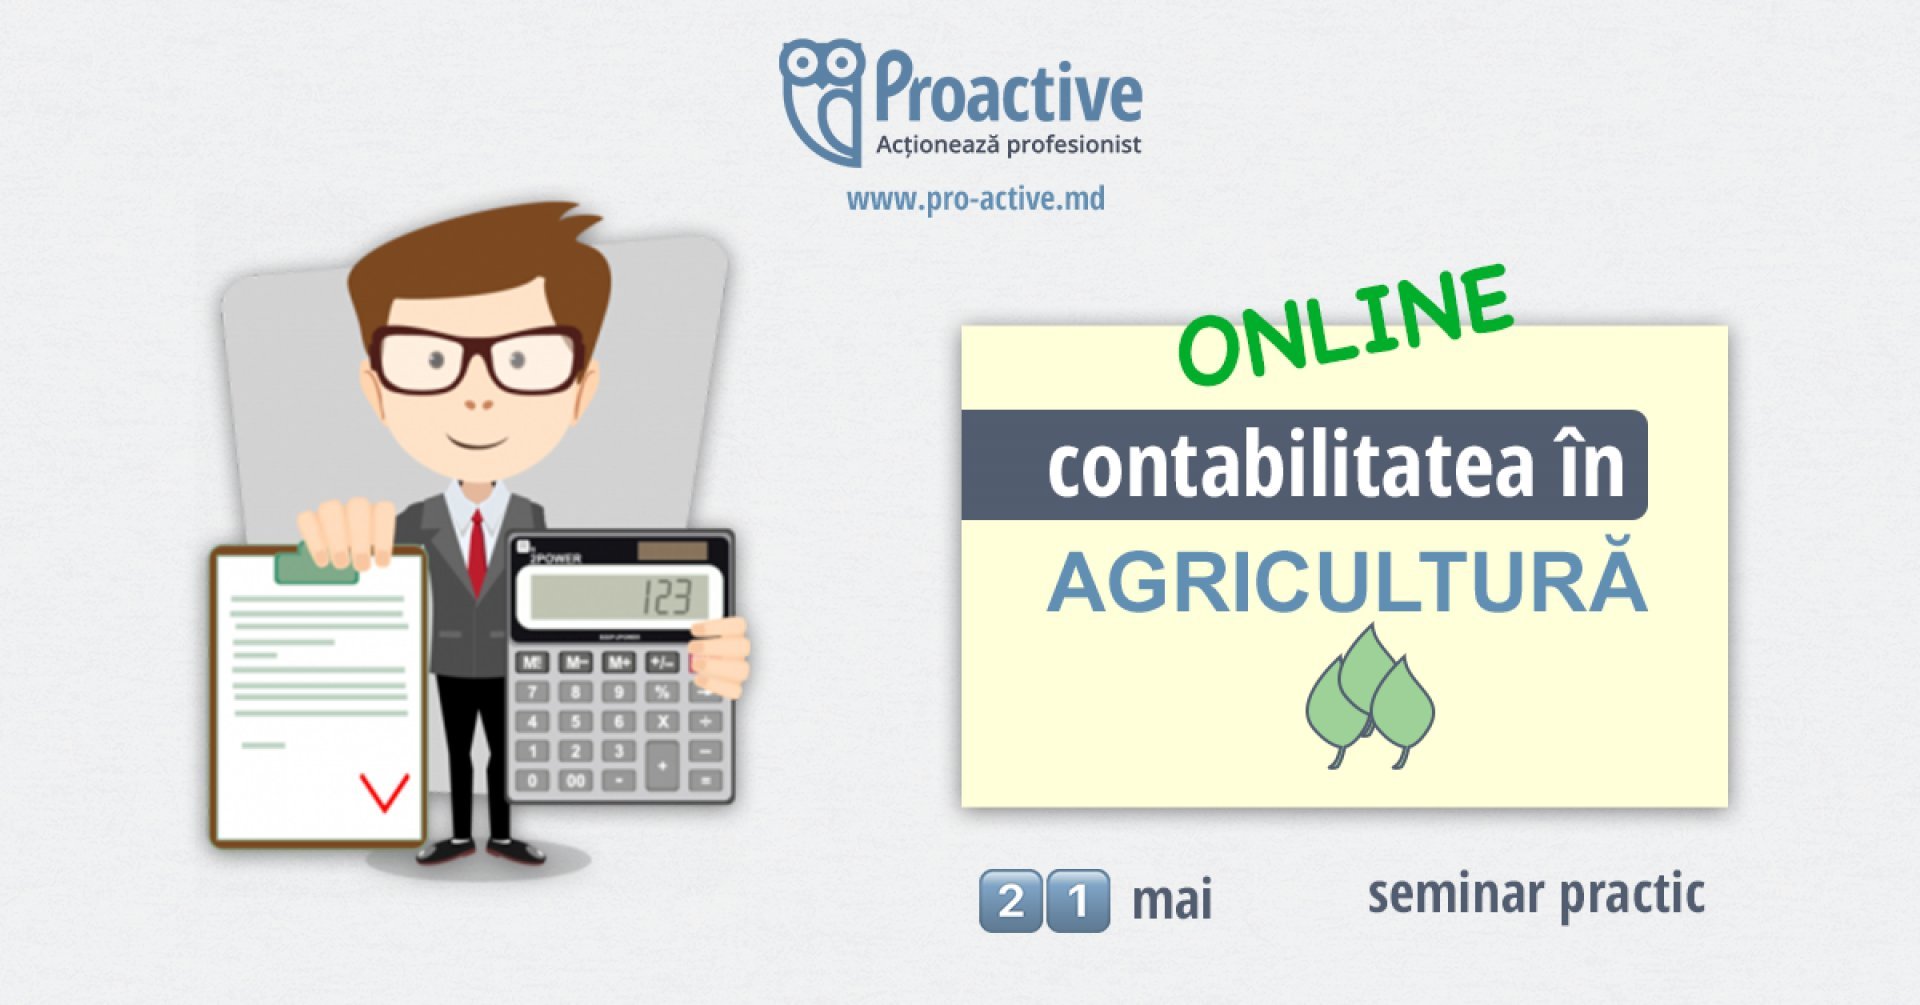 Seminar practic: Contabilitatea in agricultura